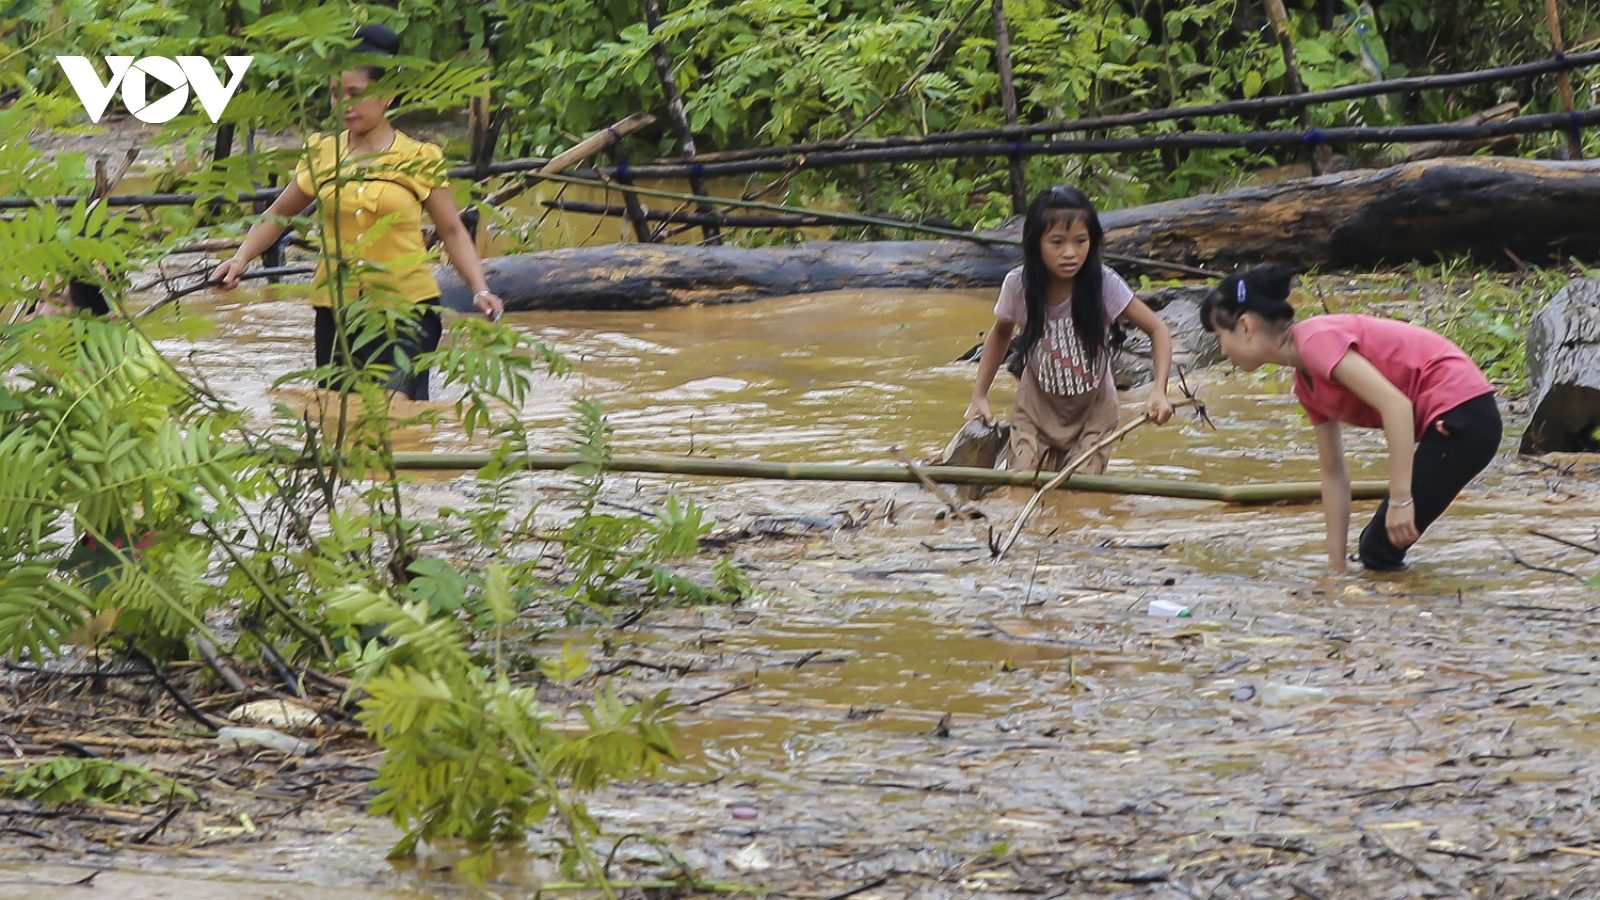 Mặc nước lũ cuồn cuộn, người dân Điện Biên vẫn đua nhau đi vớt củi, bắt cá